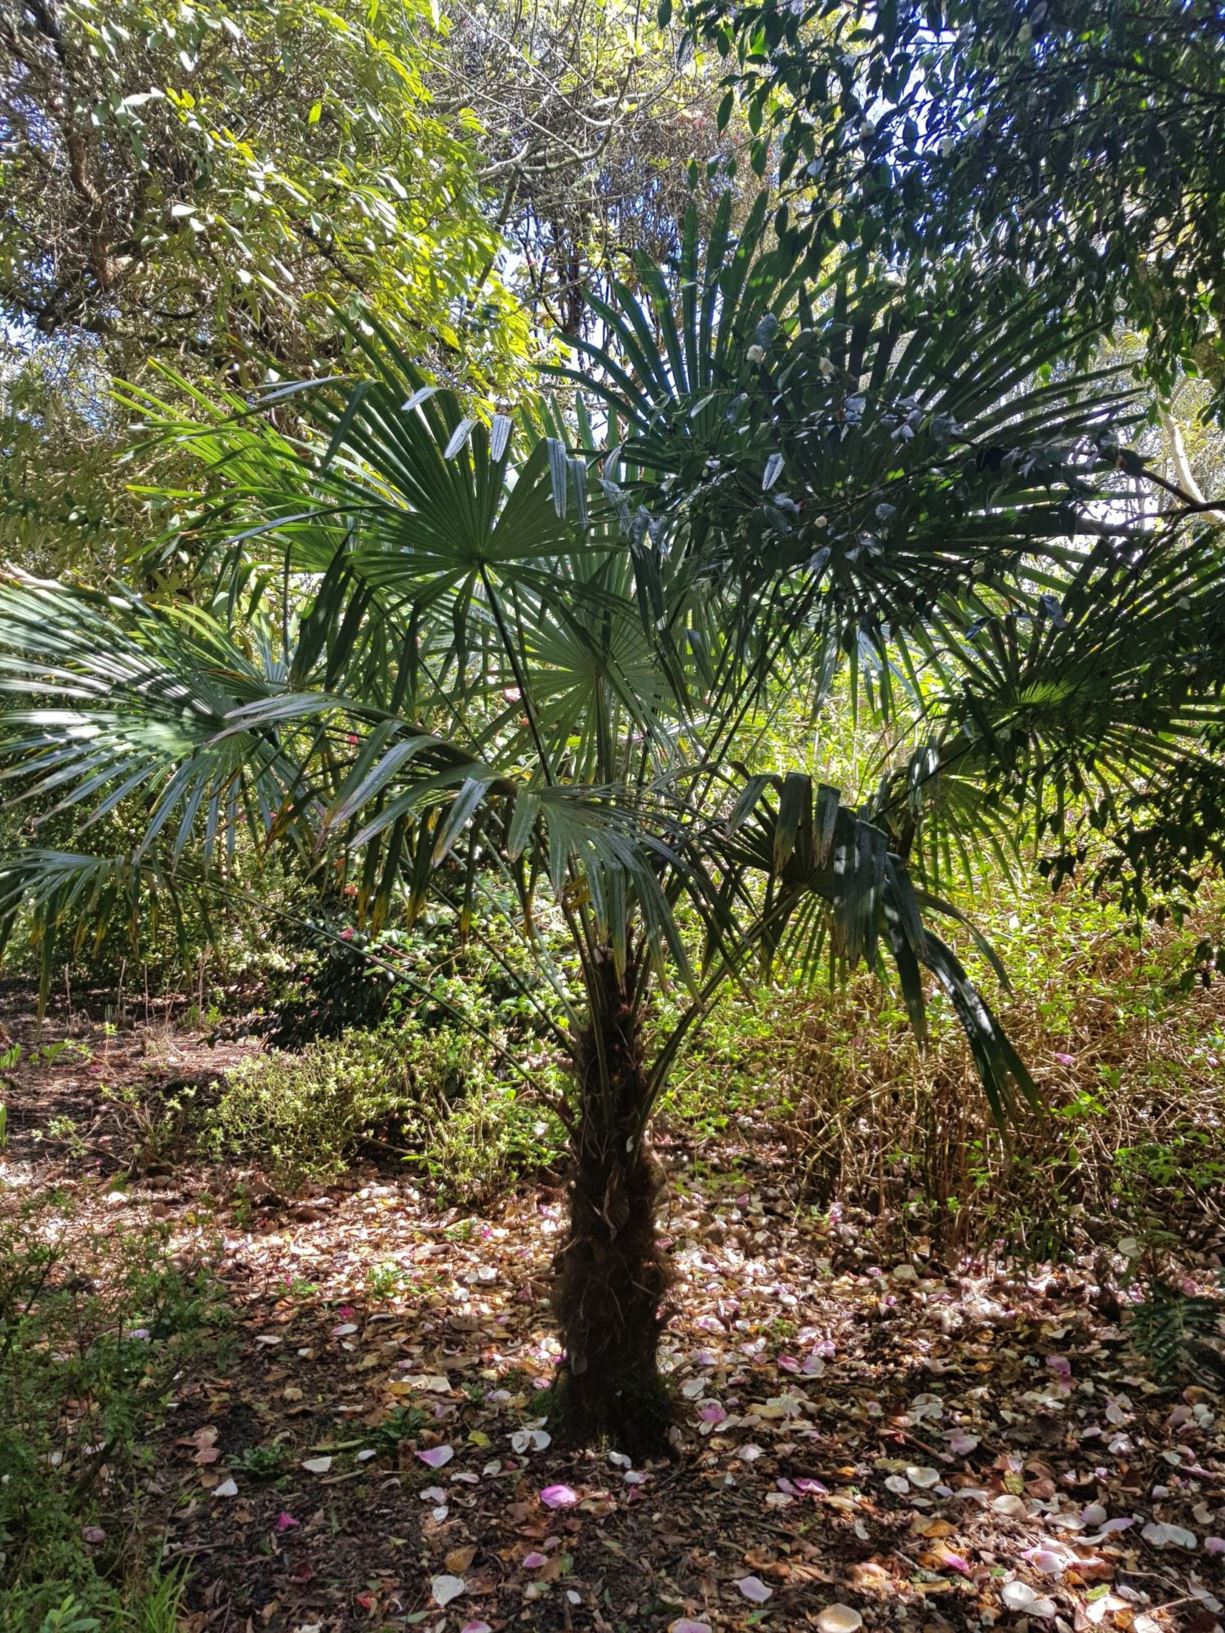 Trachycarpus fortunei - Chinese fan palm, hemp palm